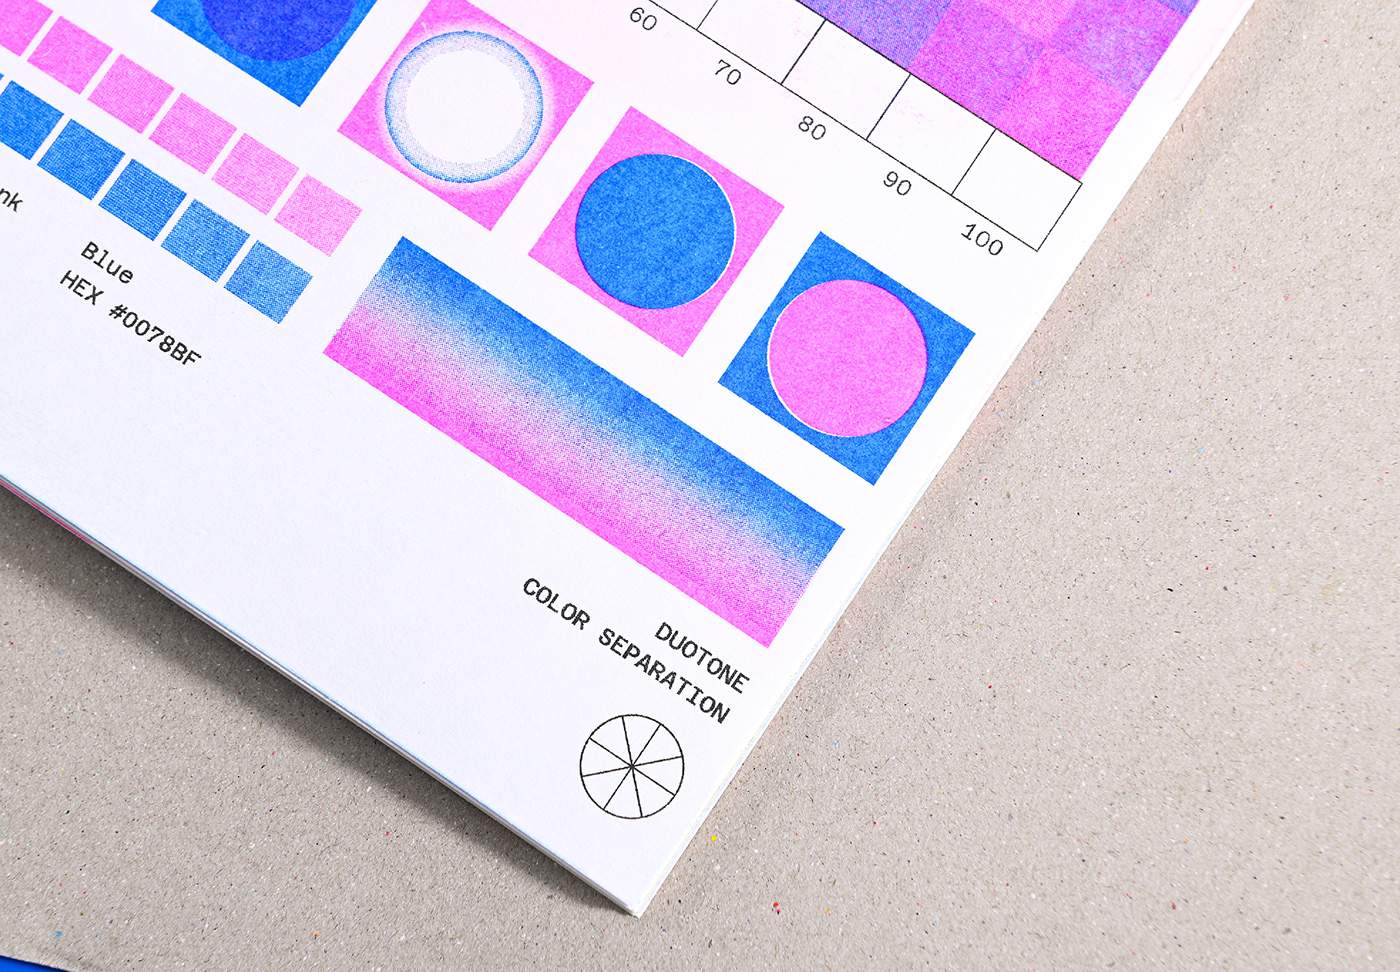 risograph Zine  editorial Riso editorial design  graphic design  book design publication publishing  